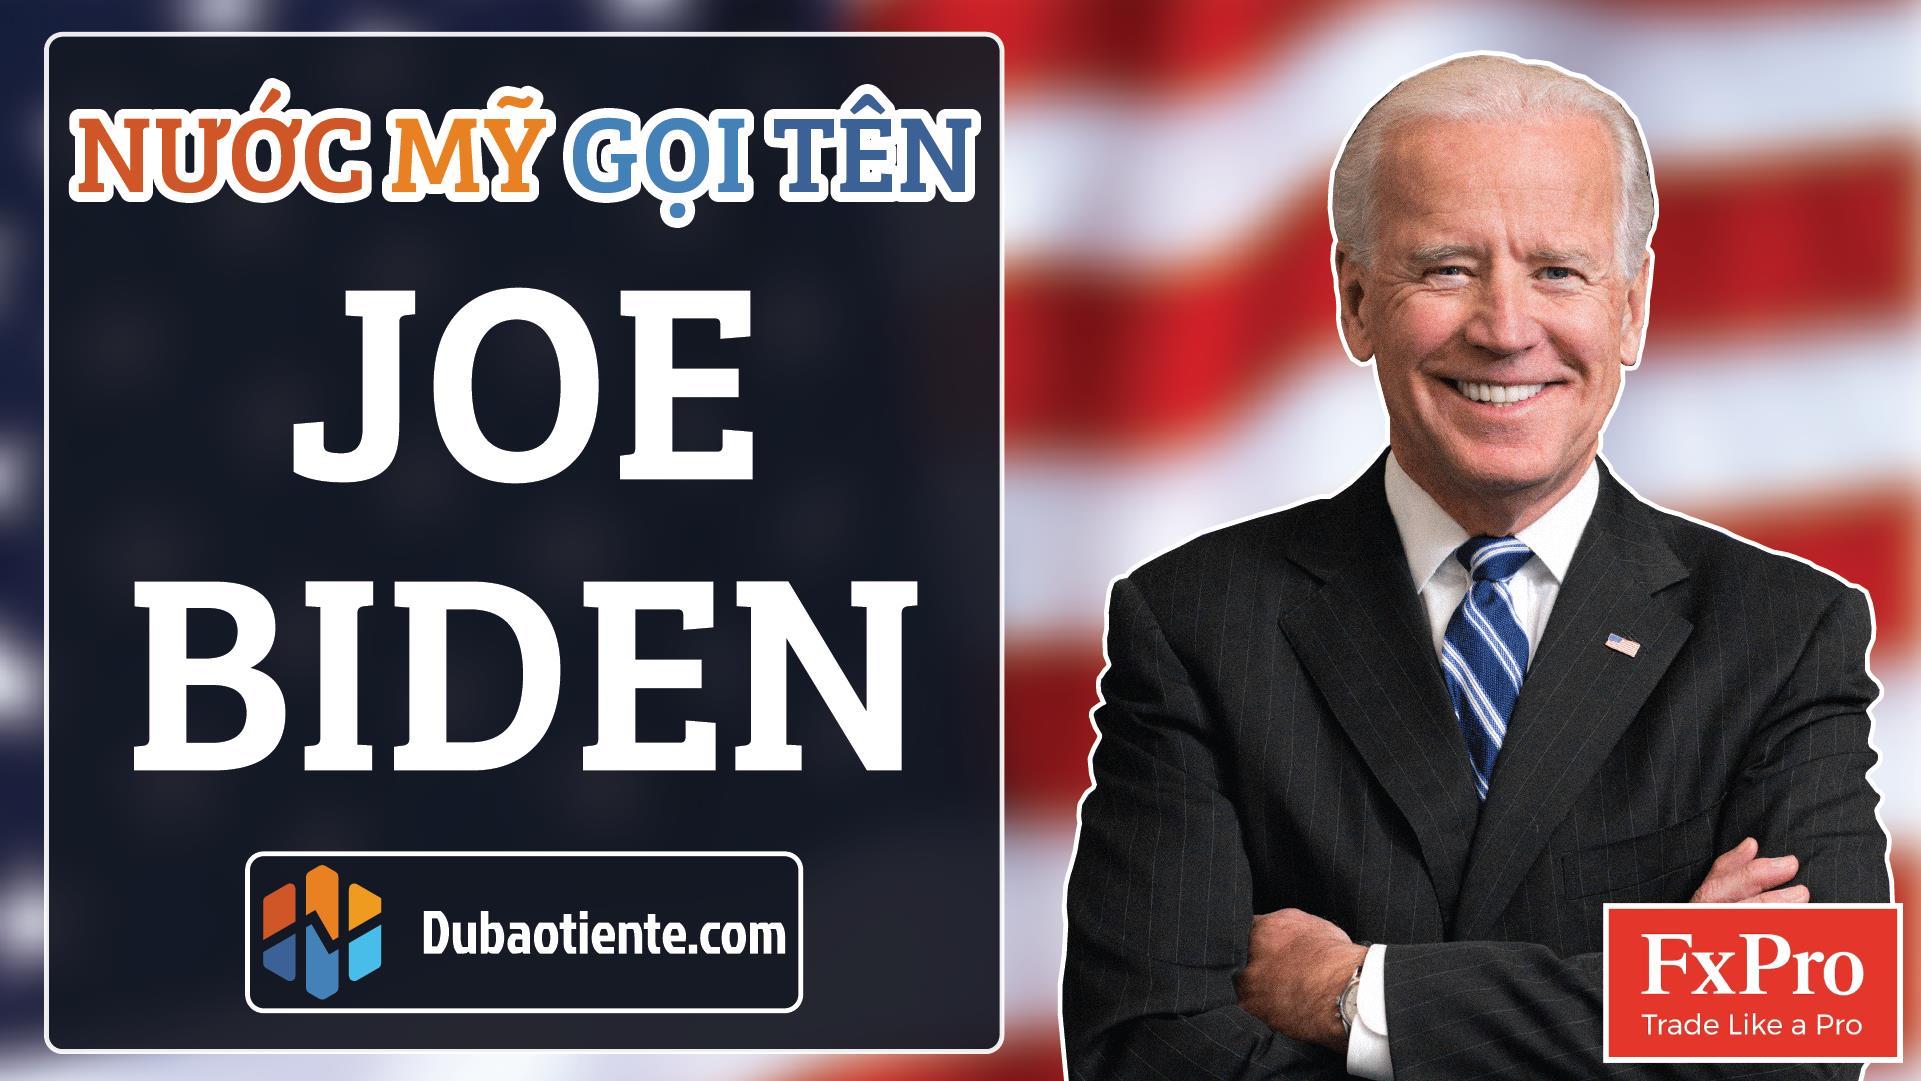 [ BẢN TIN DỰ BÁO TIỀN TỆ ] Nước Mỹ Gọi Tên Joe Biden, Toàn Thế Giới Hướng Về Cuộc Bầu Cử Tổng Thống